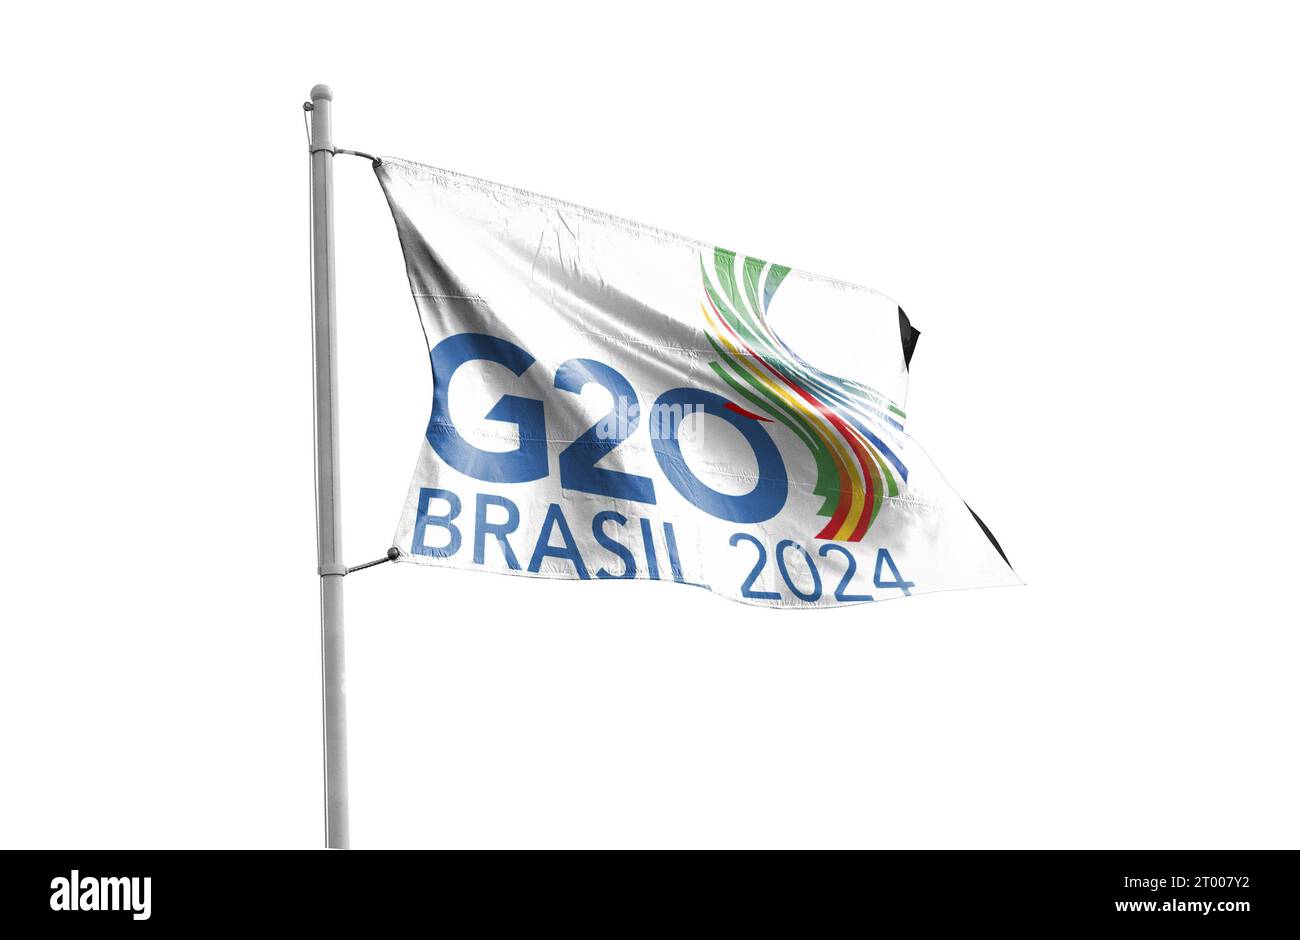 Le sommet du G20 de Rio de Janeiro en 2024 Banque D'Images